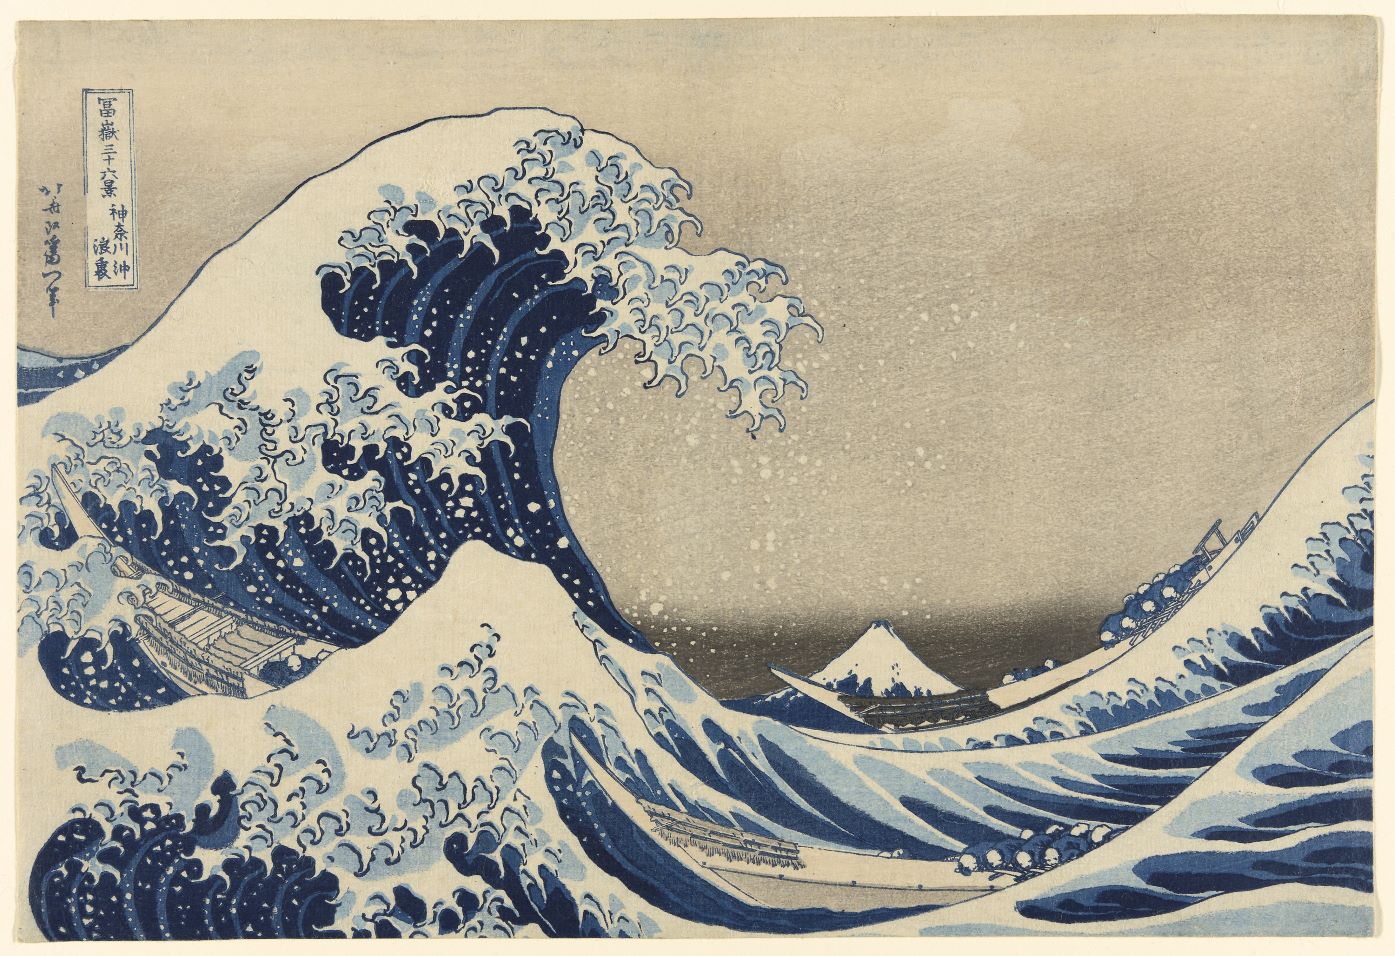 La gran ola. Obra de Katsushika Hokusai - Art Institute of Chicago.